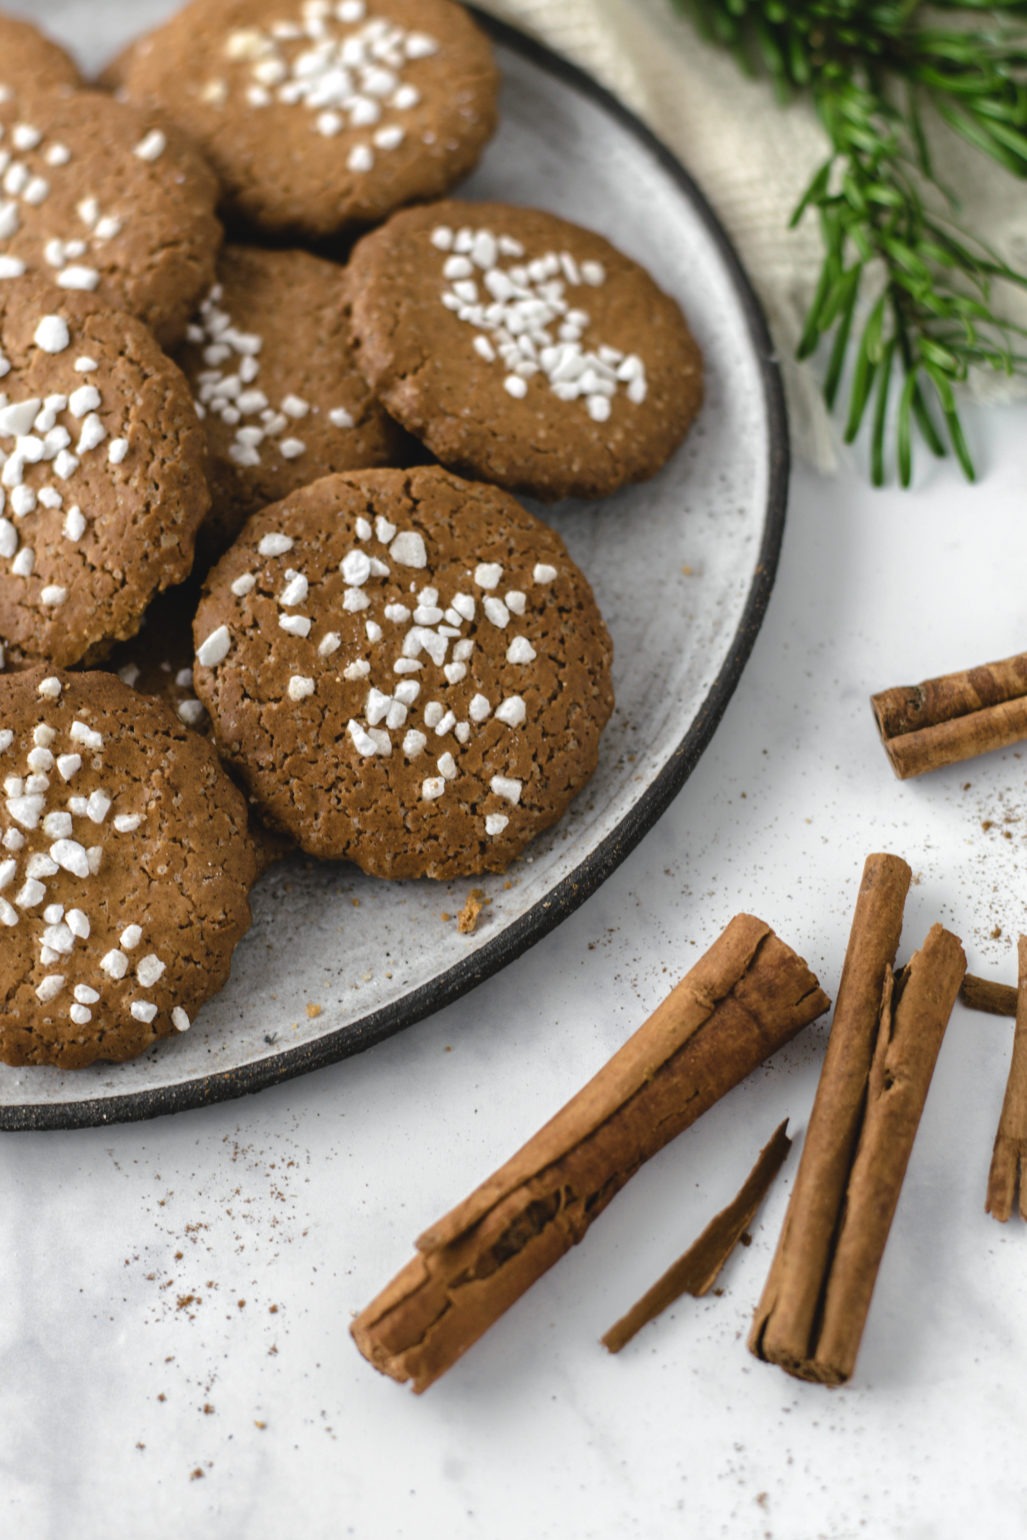 Einfaches und schnelles Plätzchen Rezept zu Weihnachten zum Ausstechen. Traditionelle Weihnachtliche Kekse mit Rübensirup ähnlich wie Braune Kuchen. #Plätzchen #Weihnachten #Kekse #Rezept